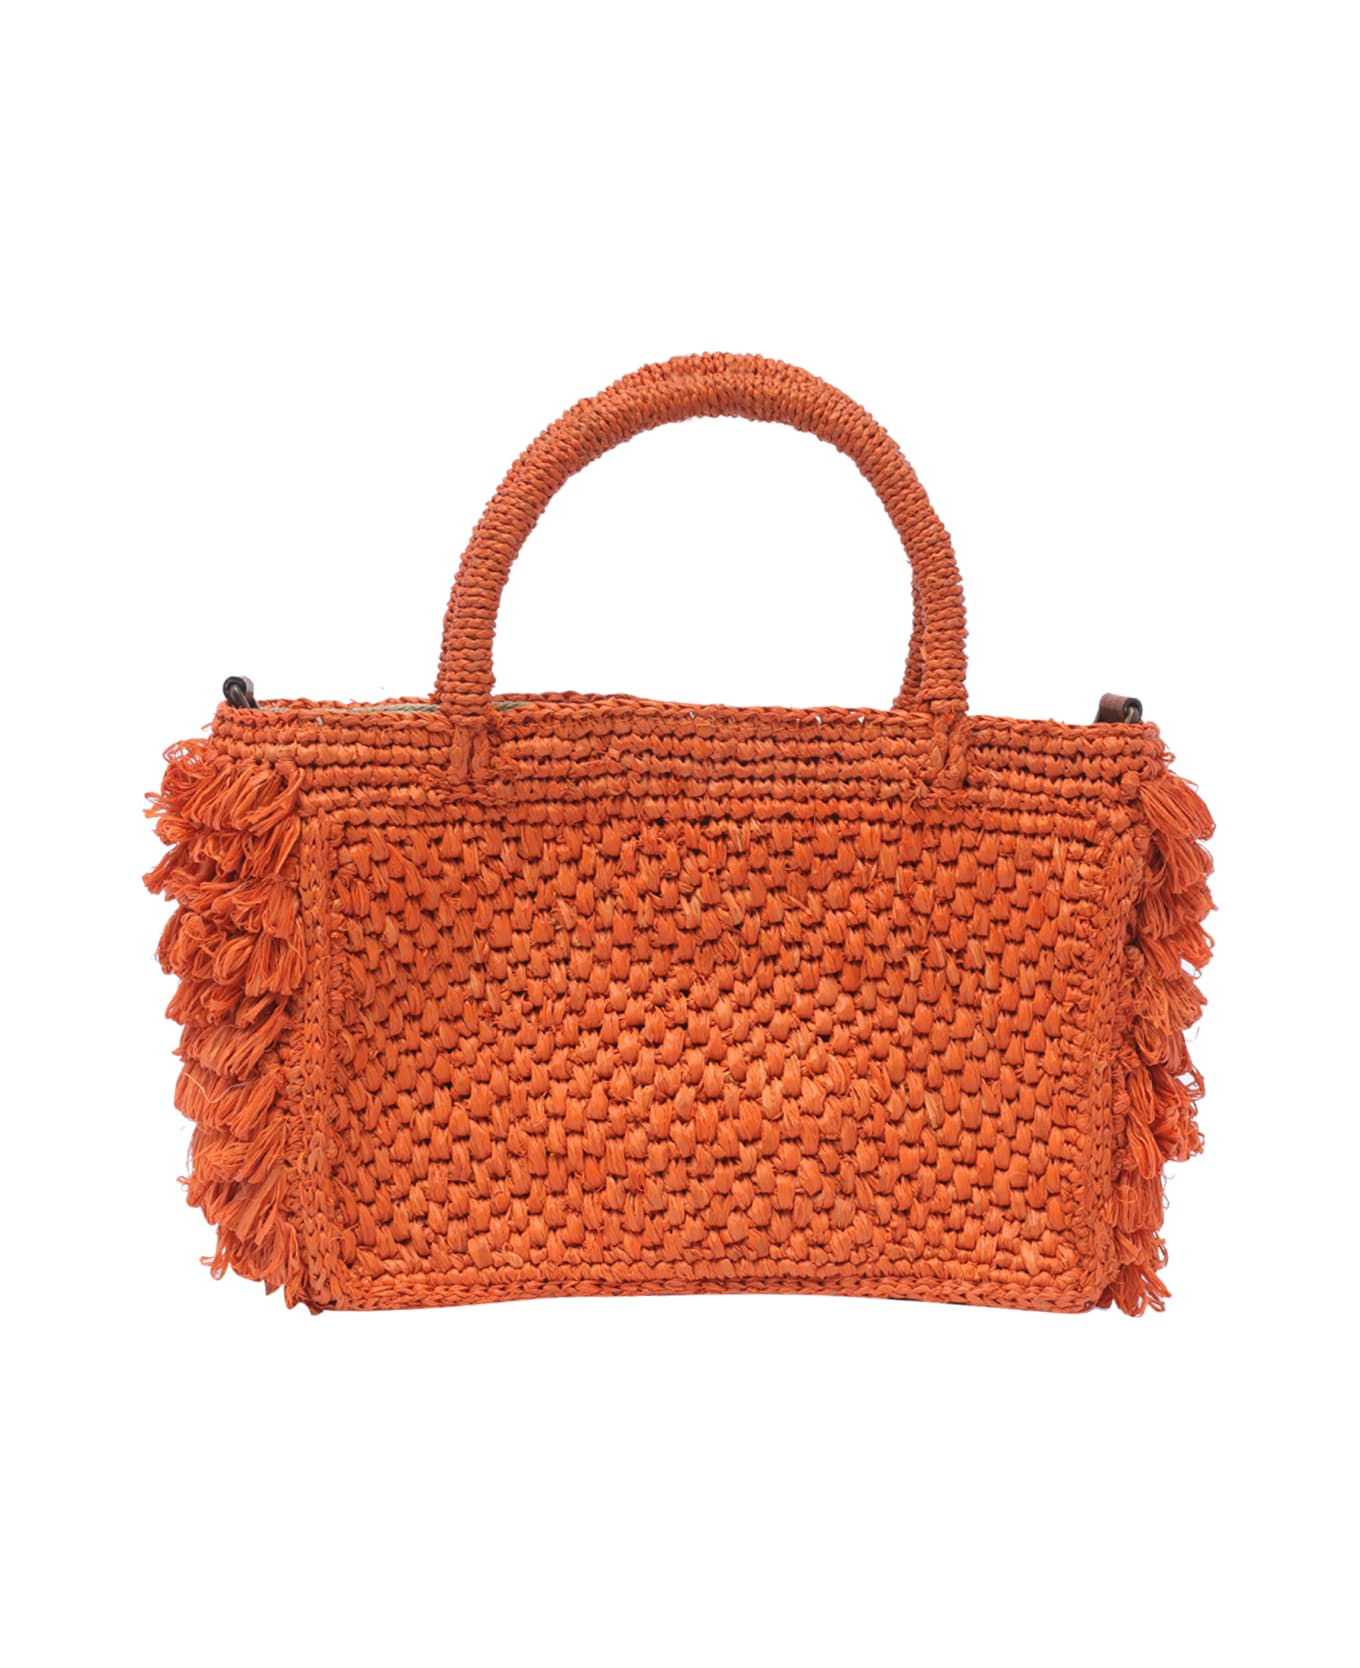 Ibeliv Cocktail Handbag - Orange